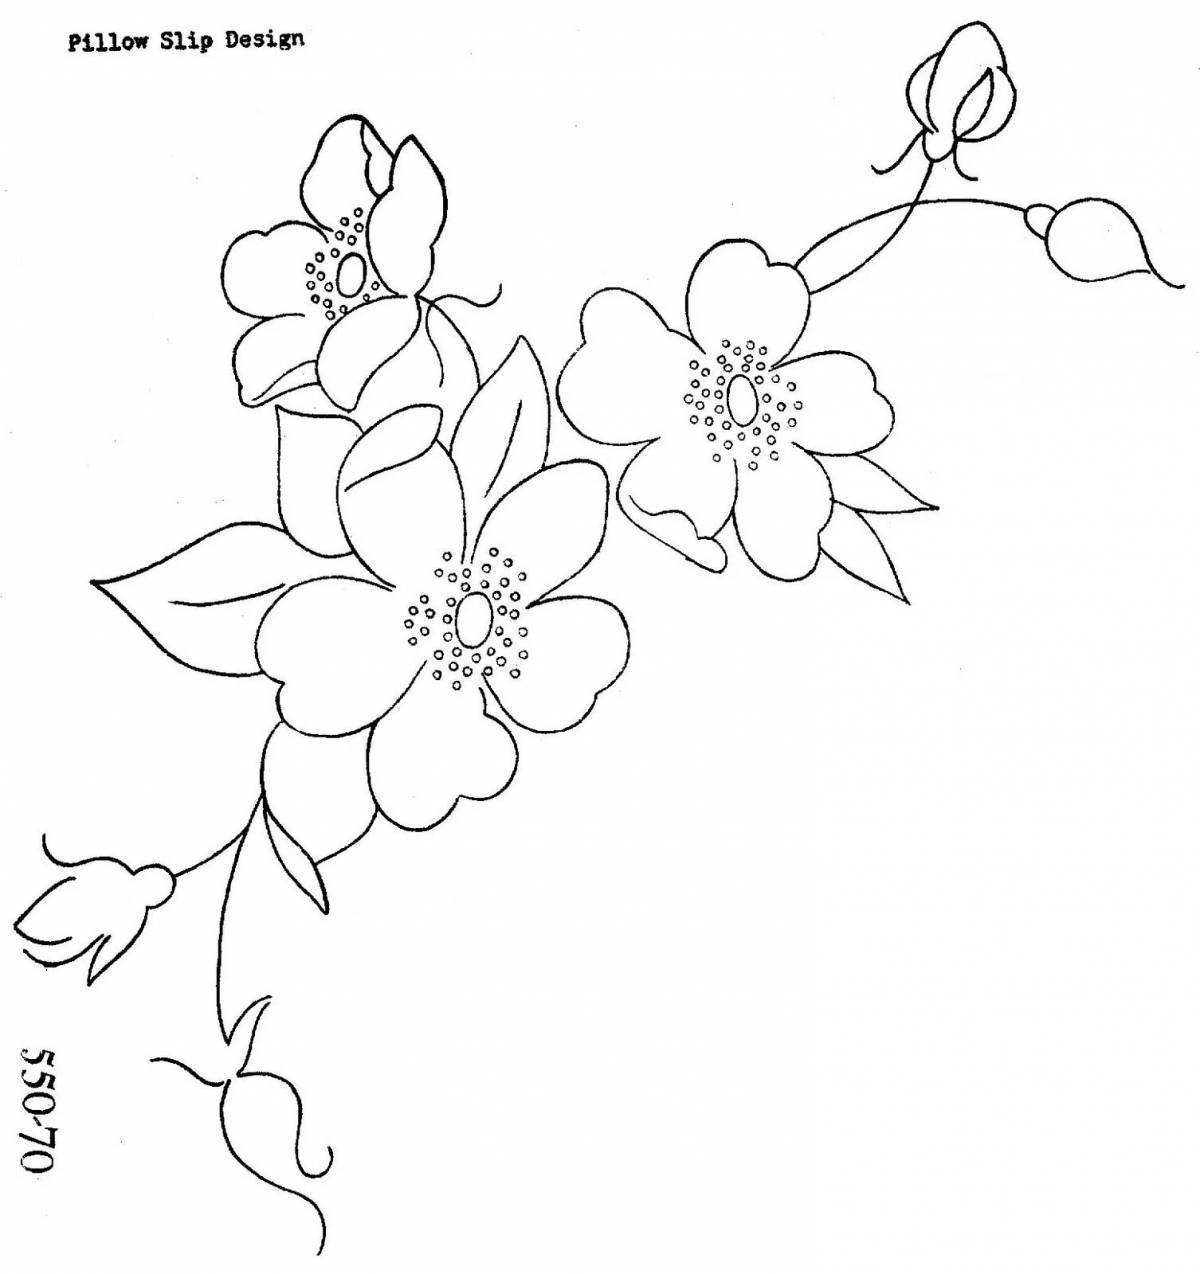 Adorable sakura branch coloring book for kids